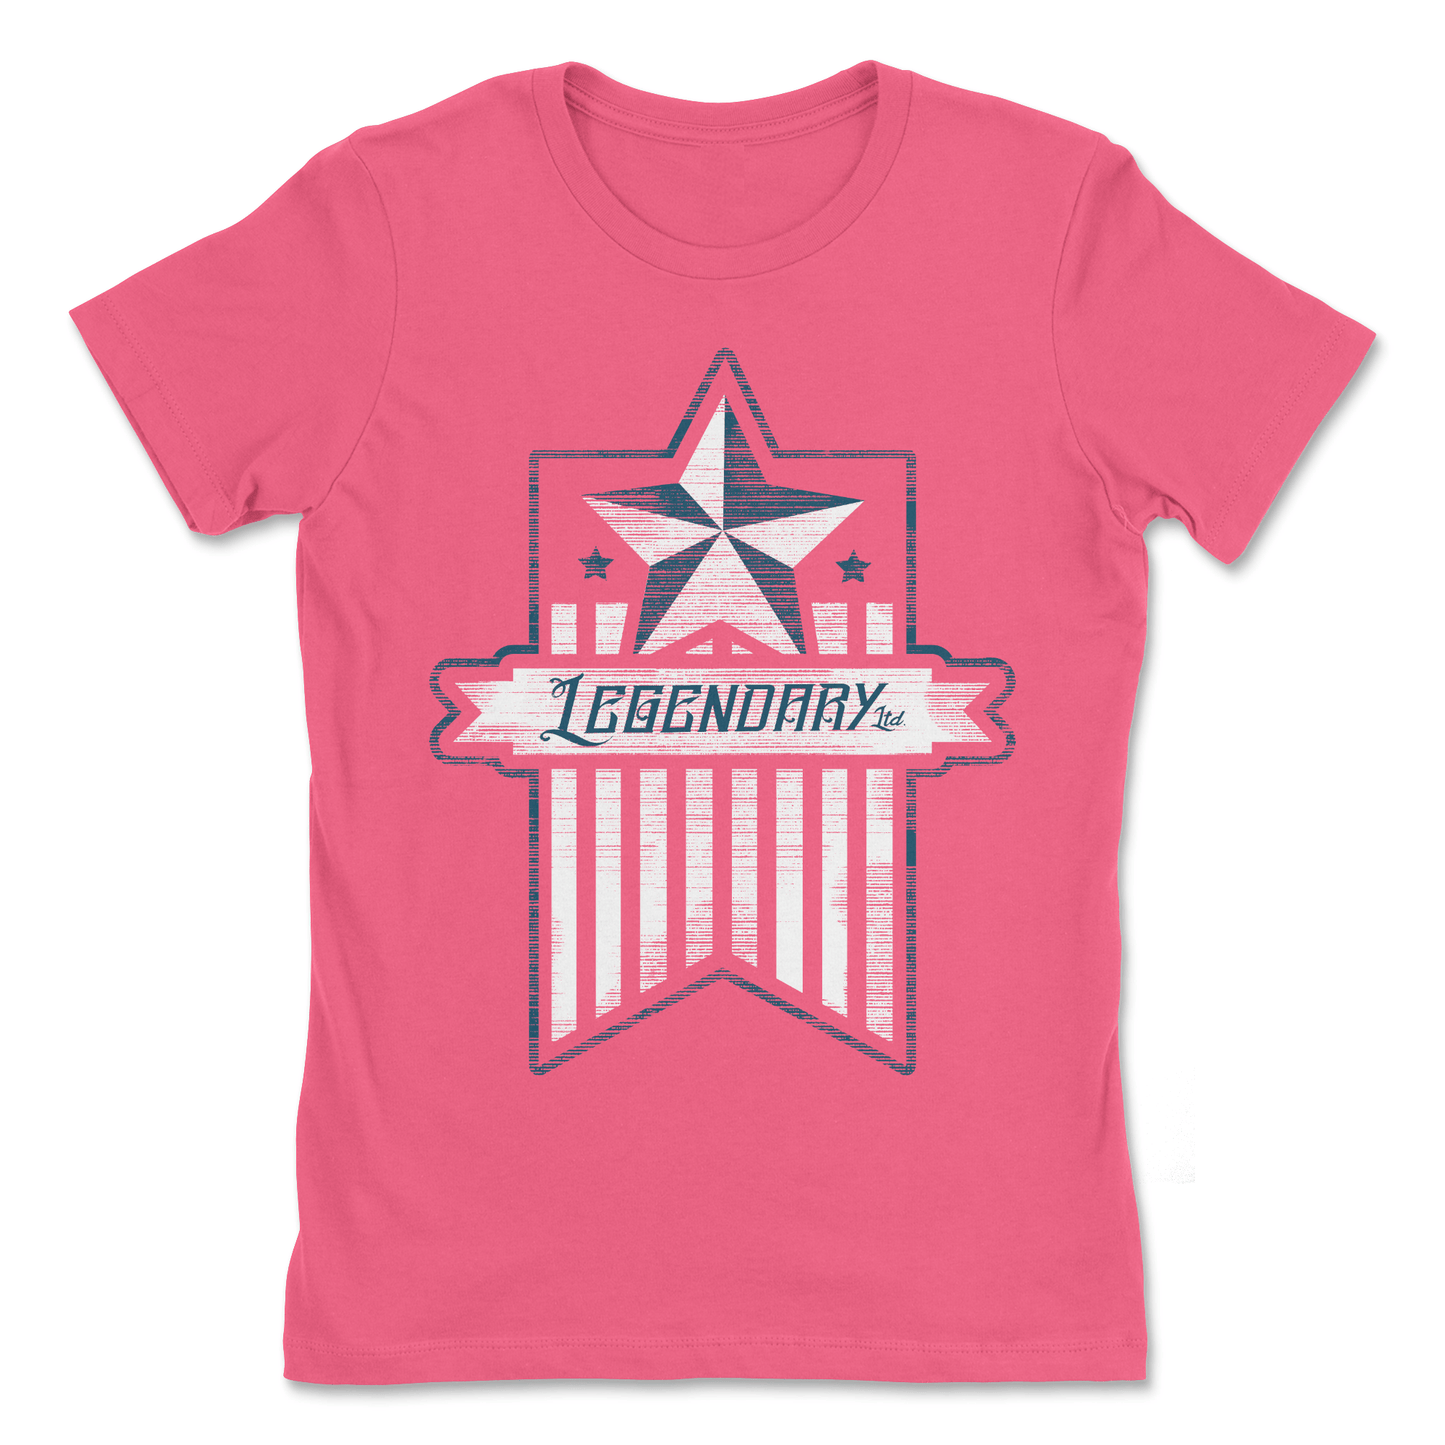 Legendary ltd. t-shirt American Banner Women's Tee